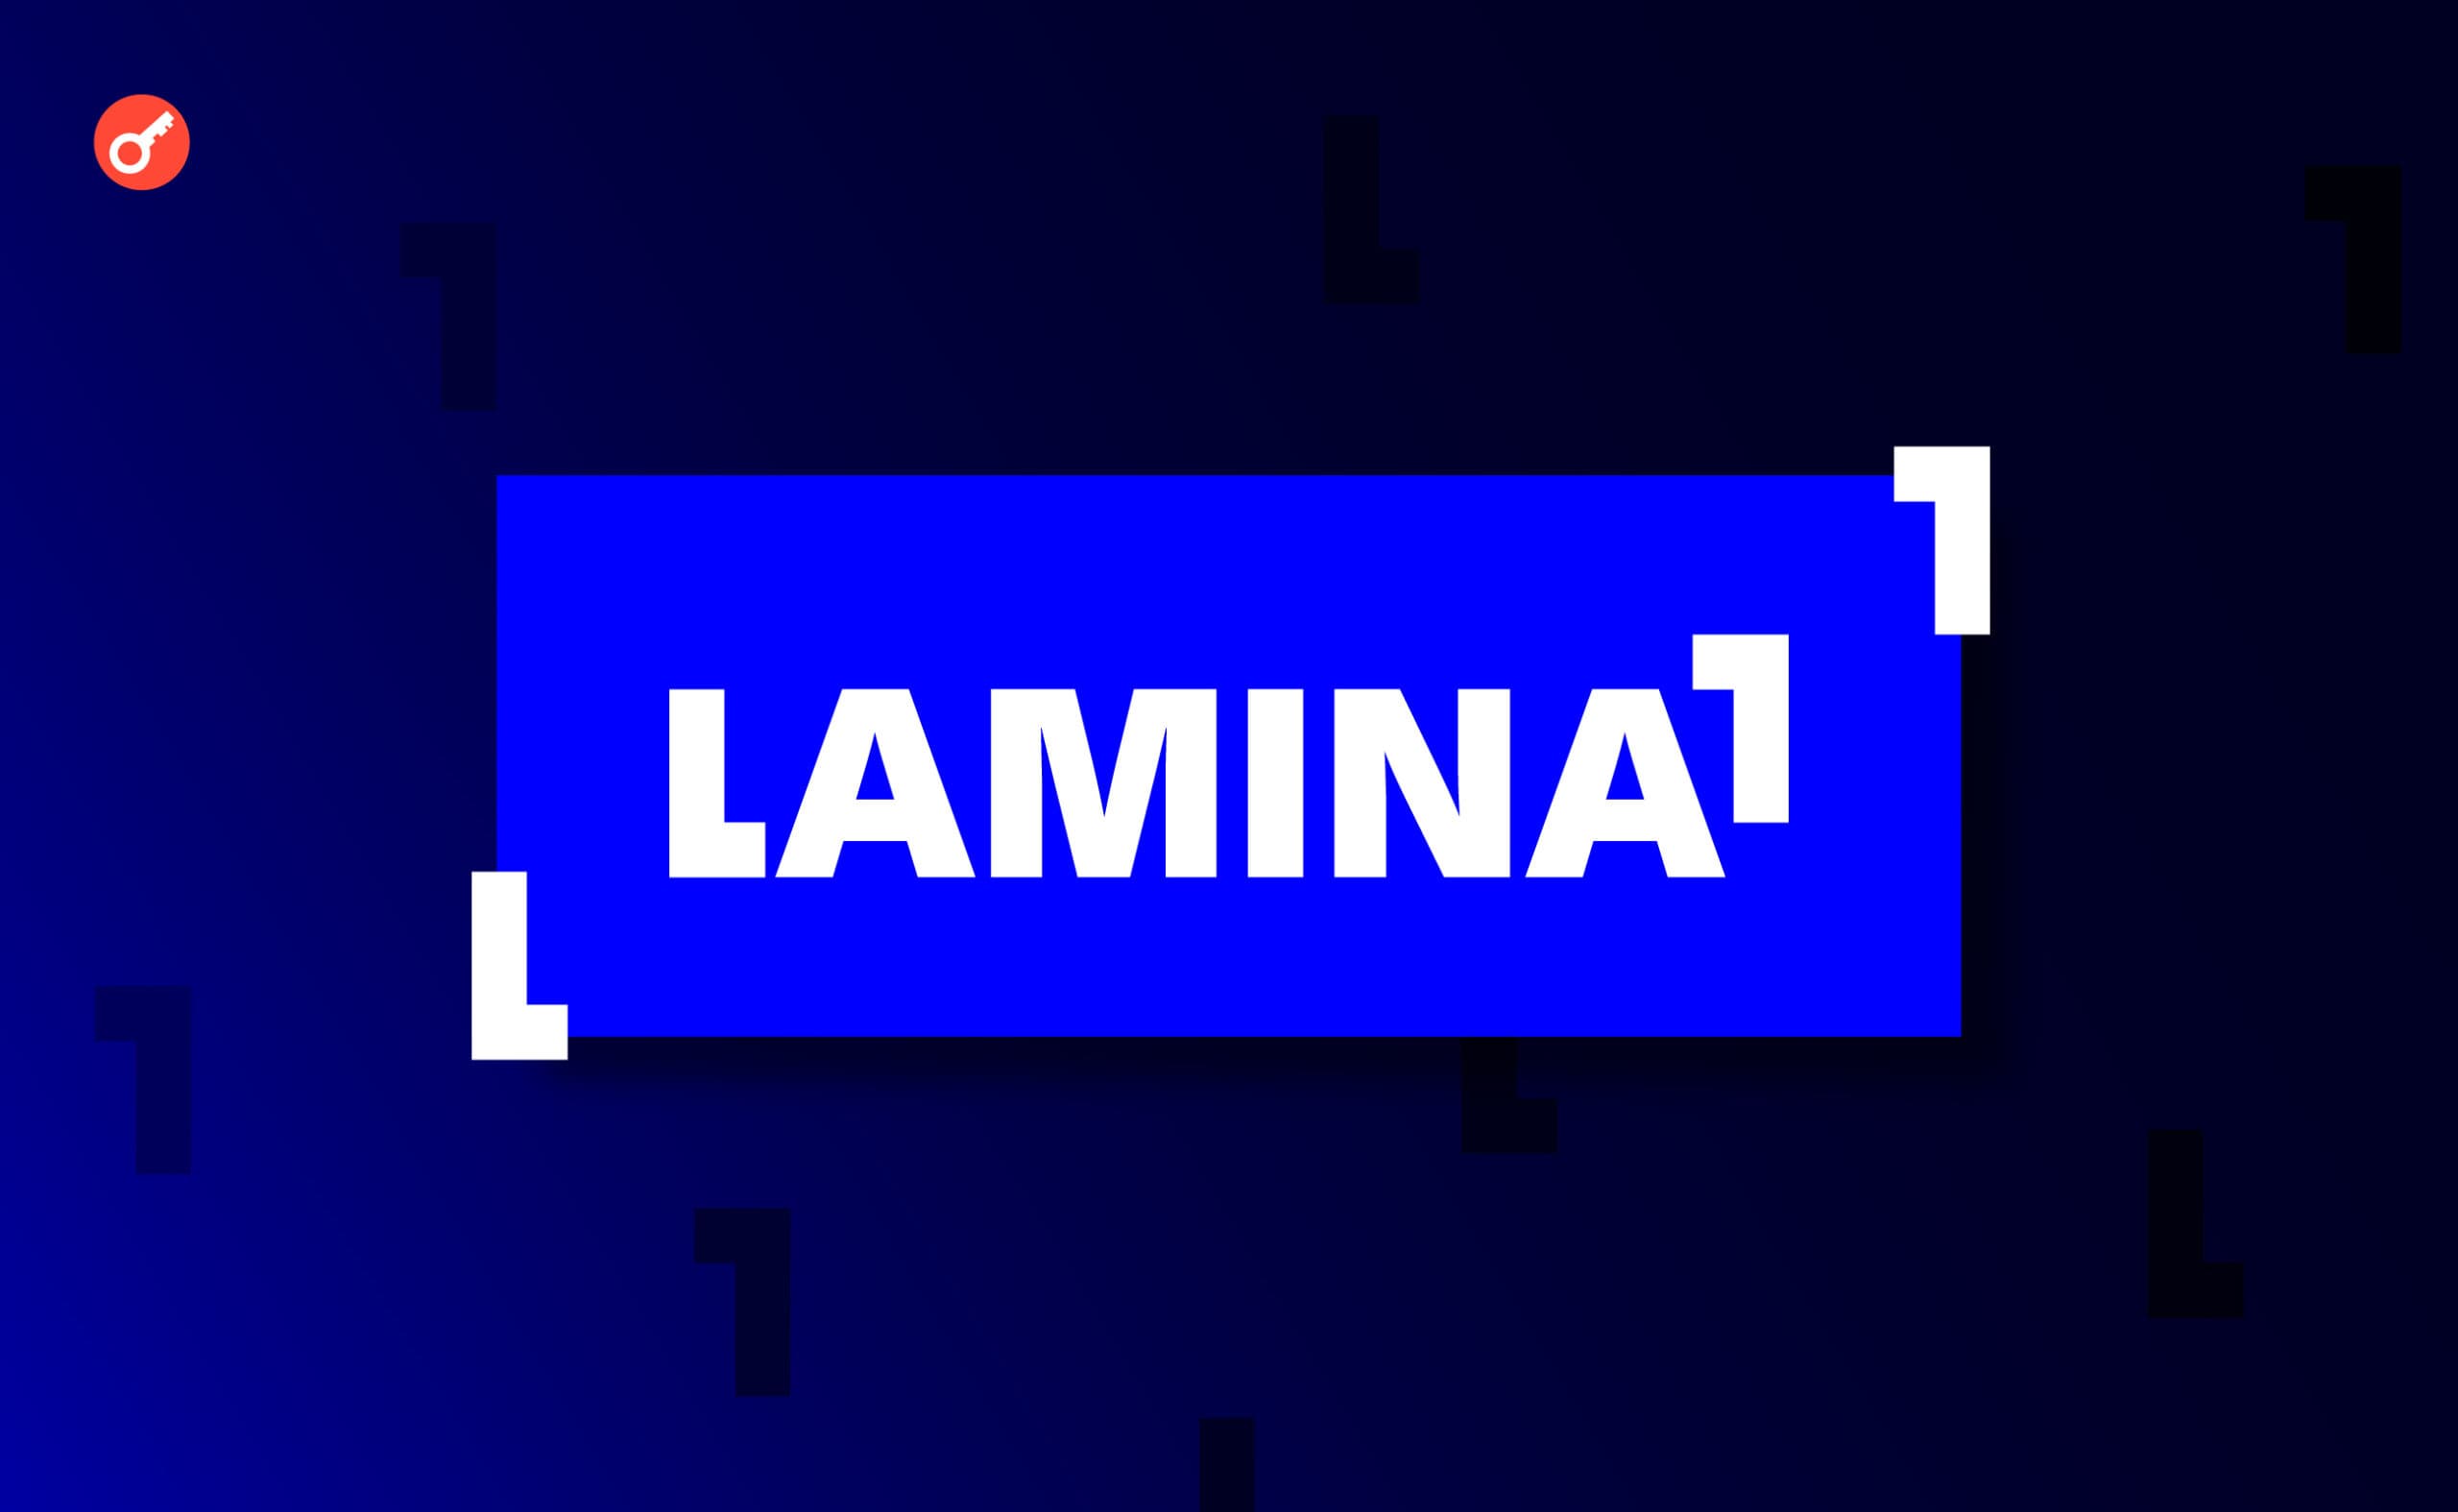 LAMINA1 тестнет: инструкция по прохождению активностей. Заглавный коллаж статьи.